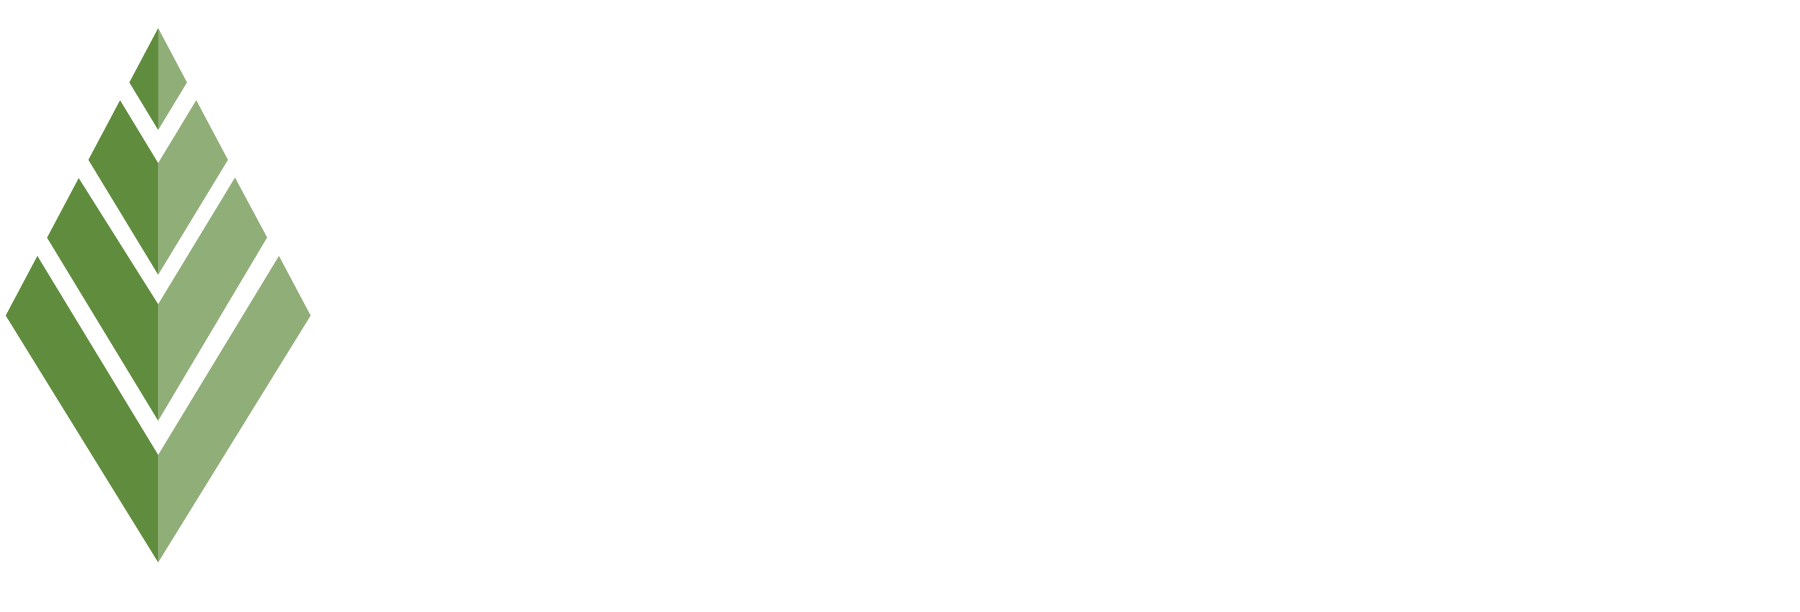 Dillon Park Header Logo - Select To Go Home